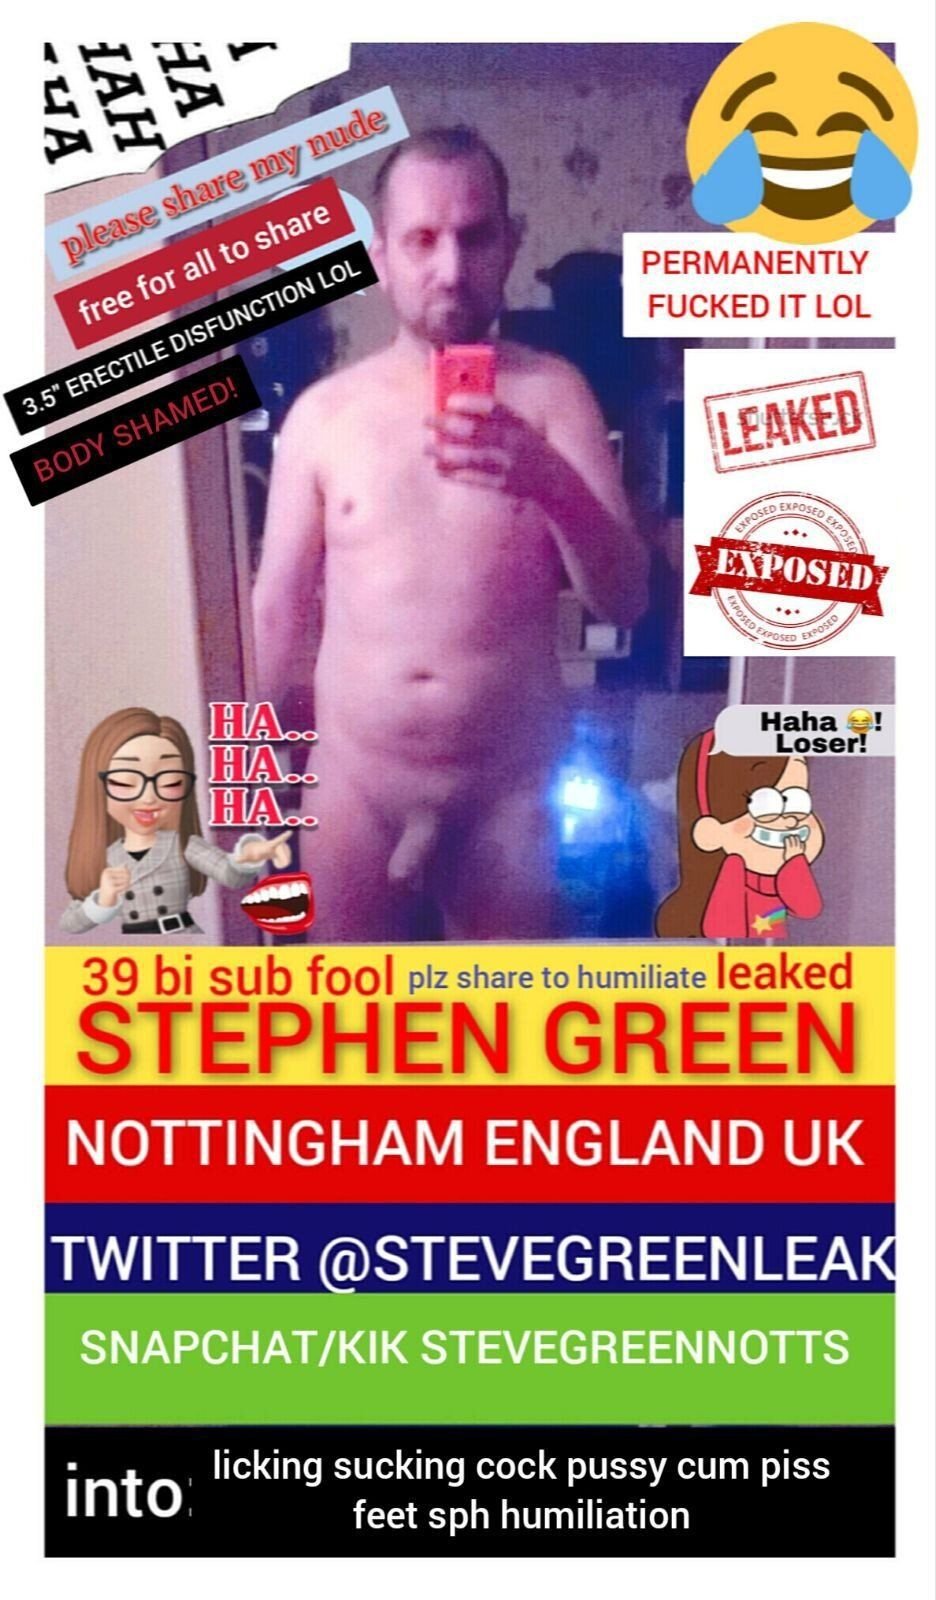 STEPHEN GREEN from NOTTINGHAM UK